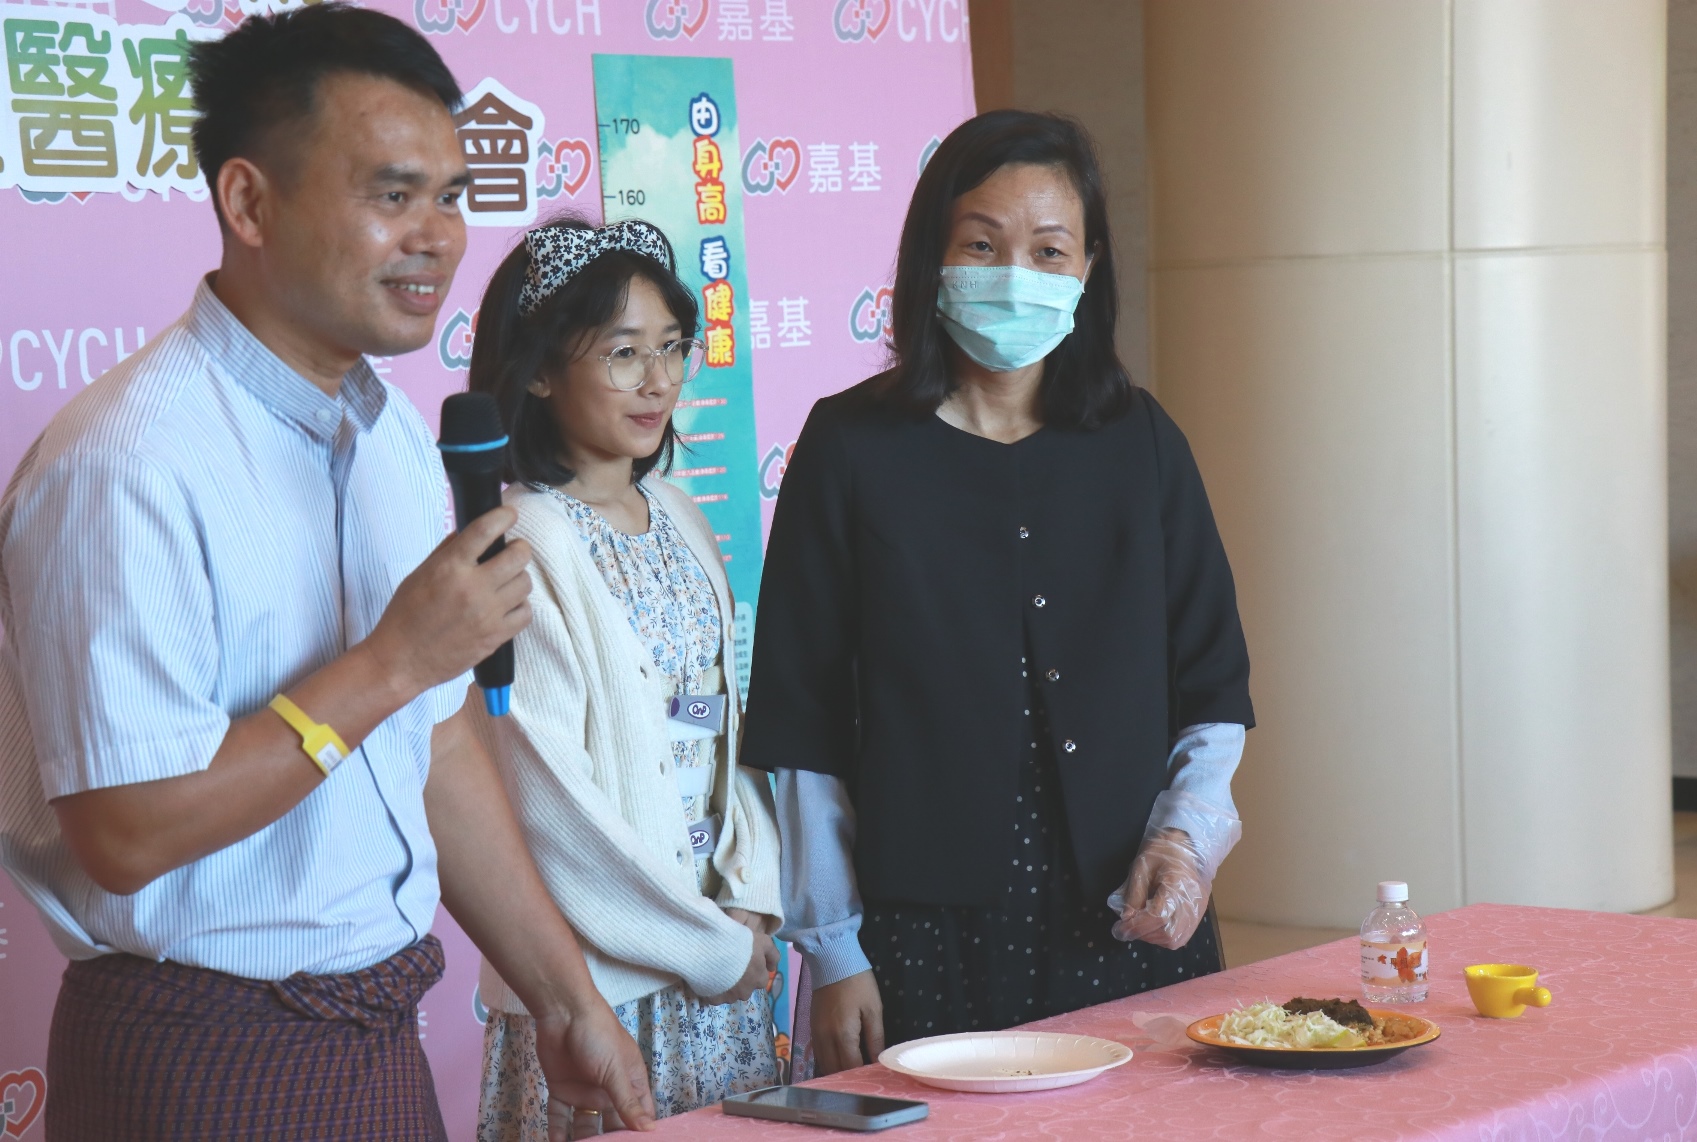 誠心與父母以緬甸當地在接待貴賓的茶沙拉感謝各界的協助。(圖/嘉義基督教醫院提供)